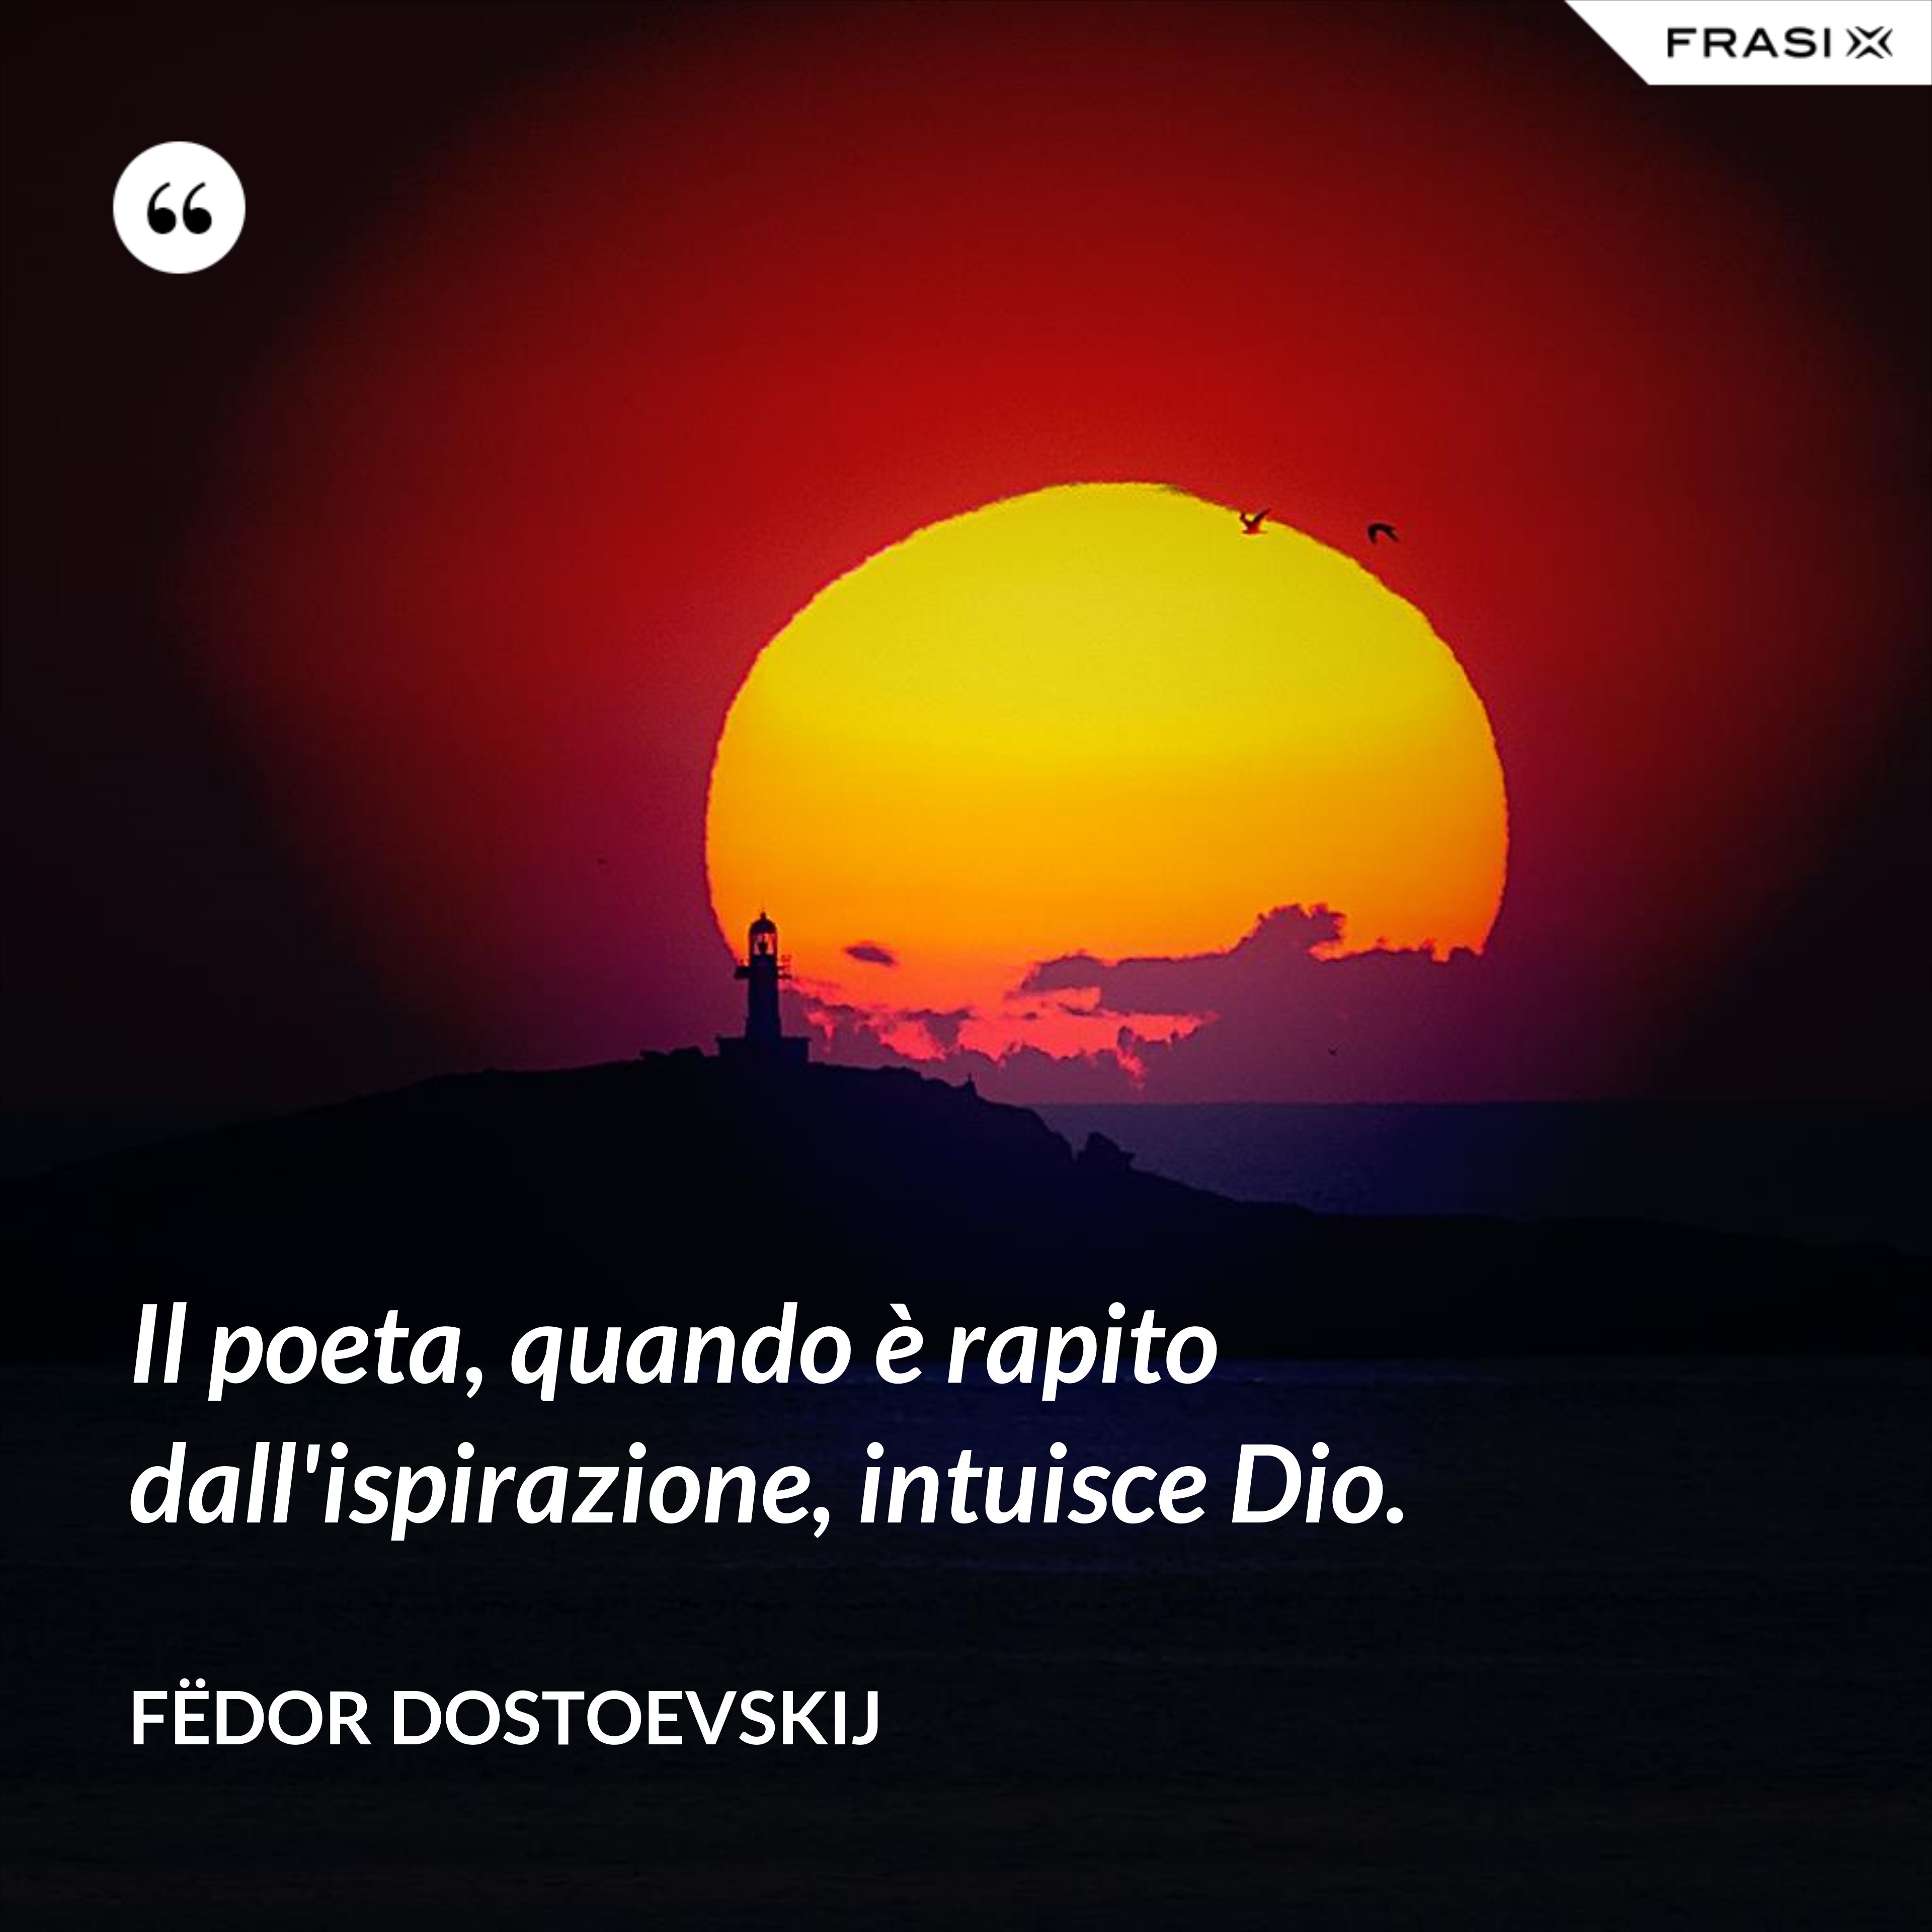 Il poeta, quando è rapito dall'ispirazione, intuisce Dio. - Fëdor Dostoevskij